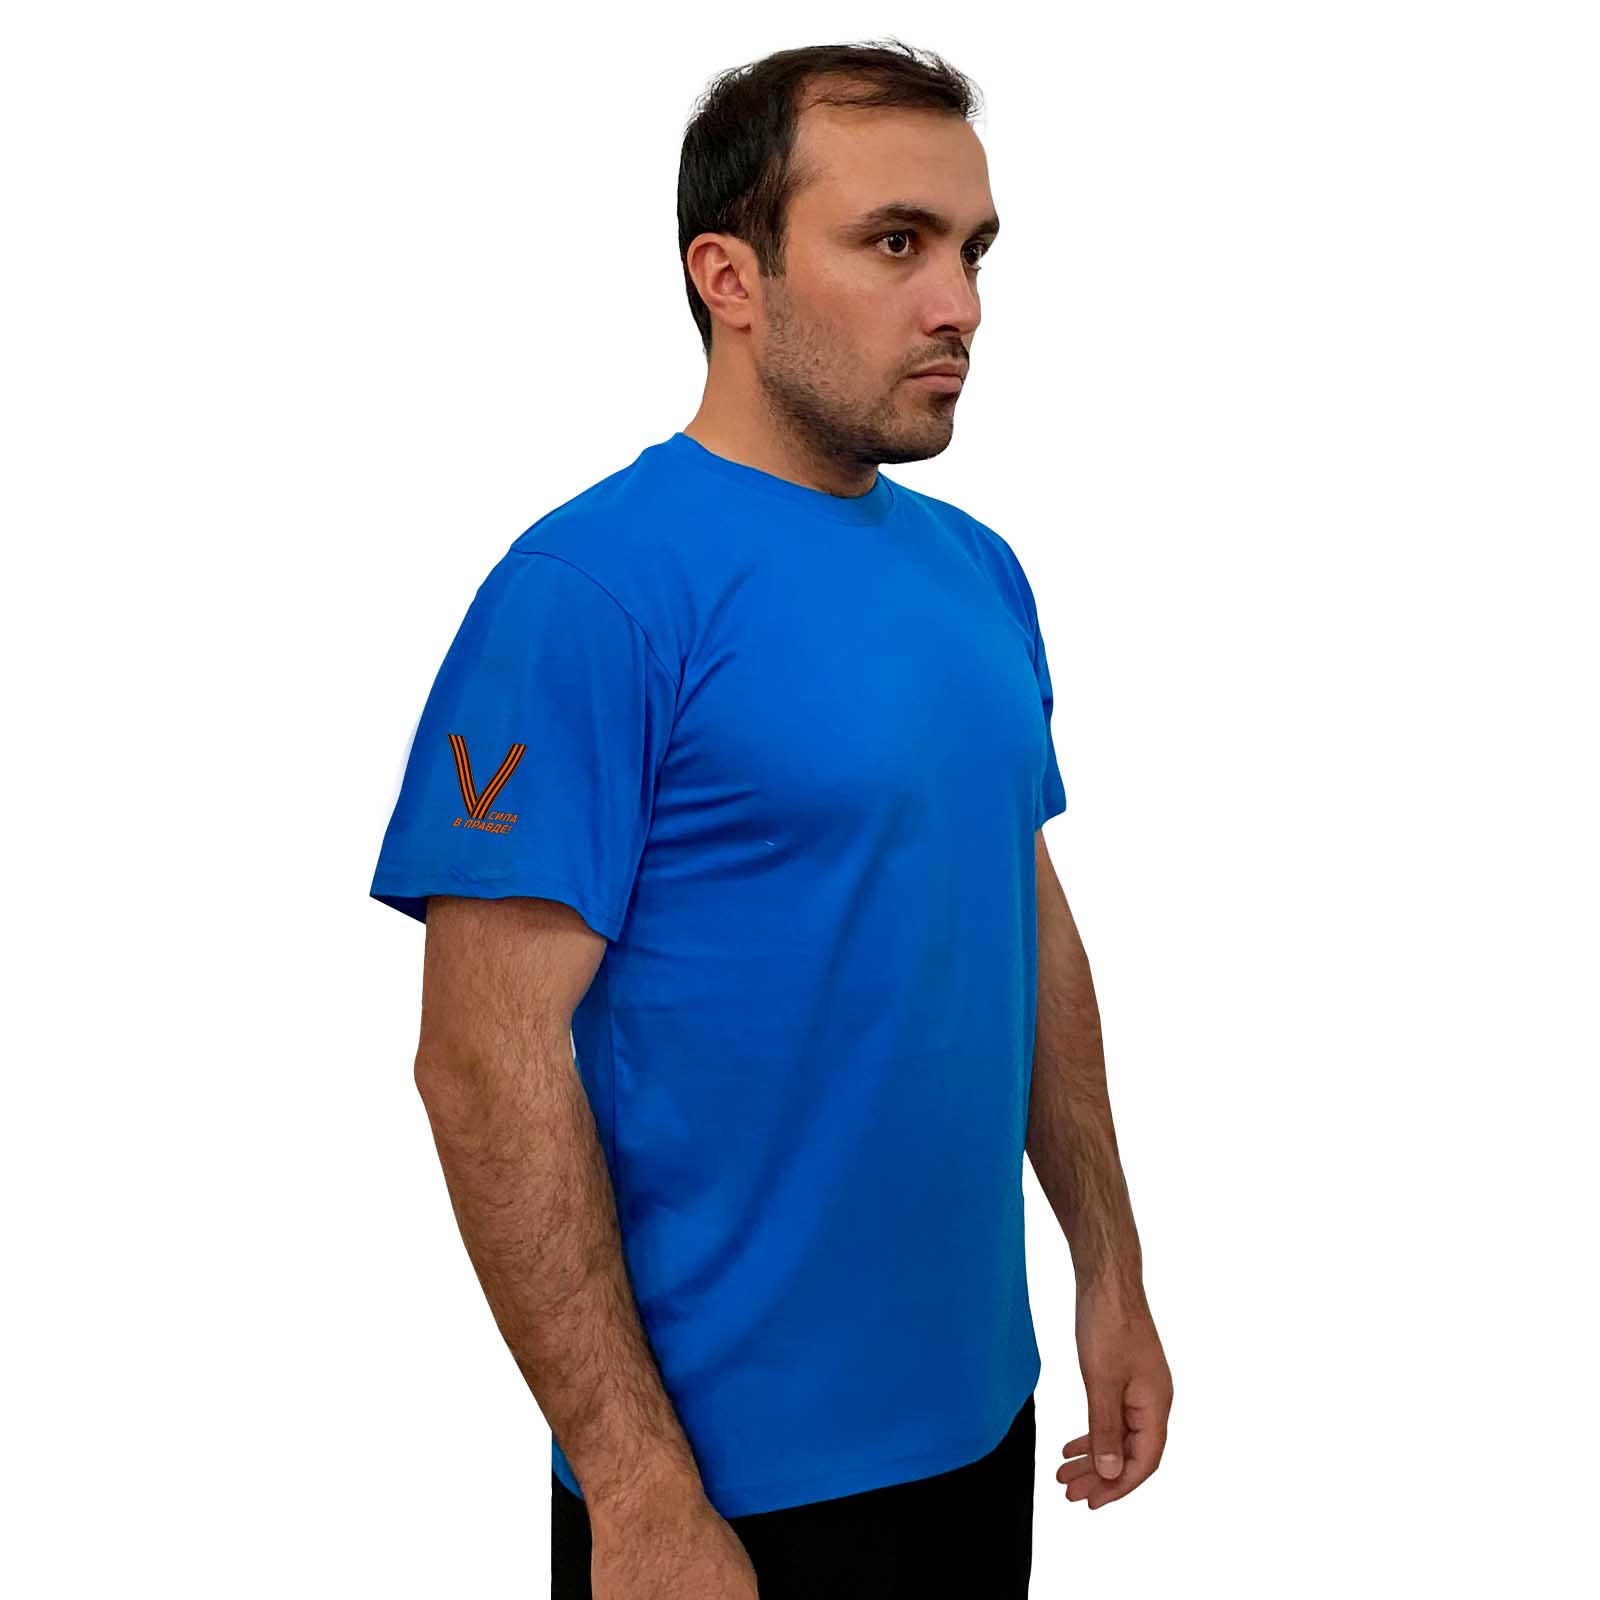 Купить крутую голубую футболку V онлайн выгодно